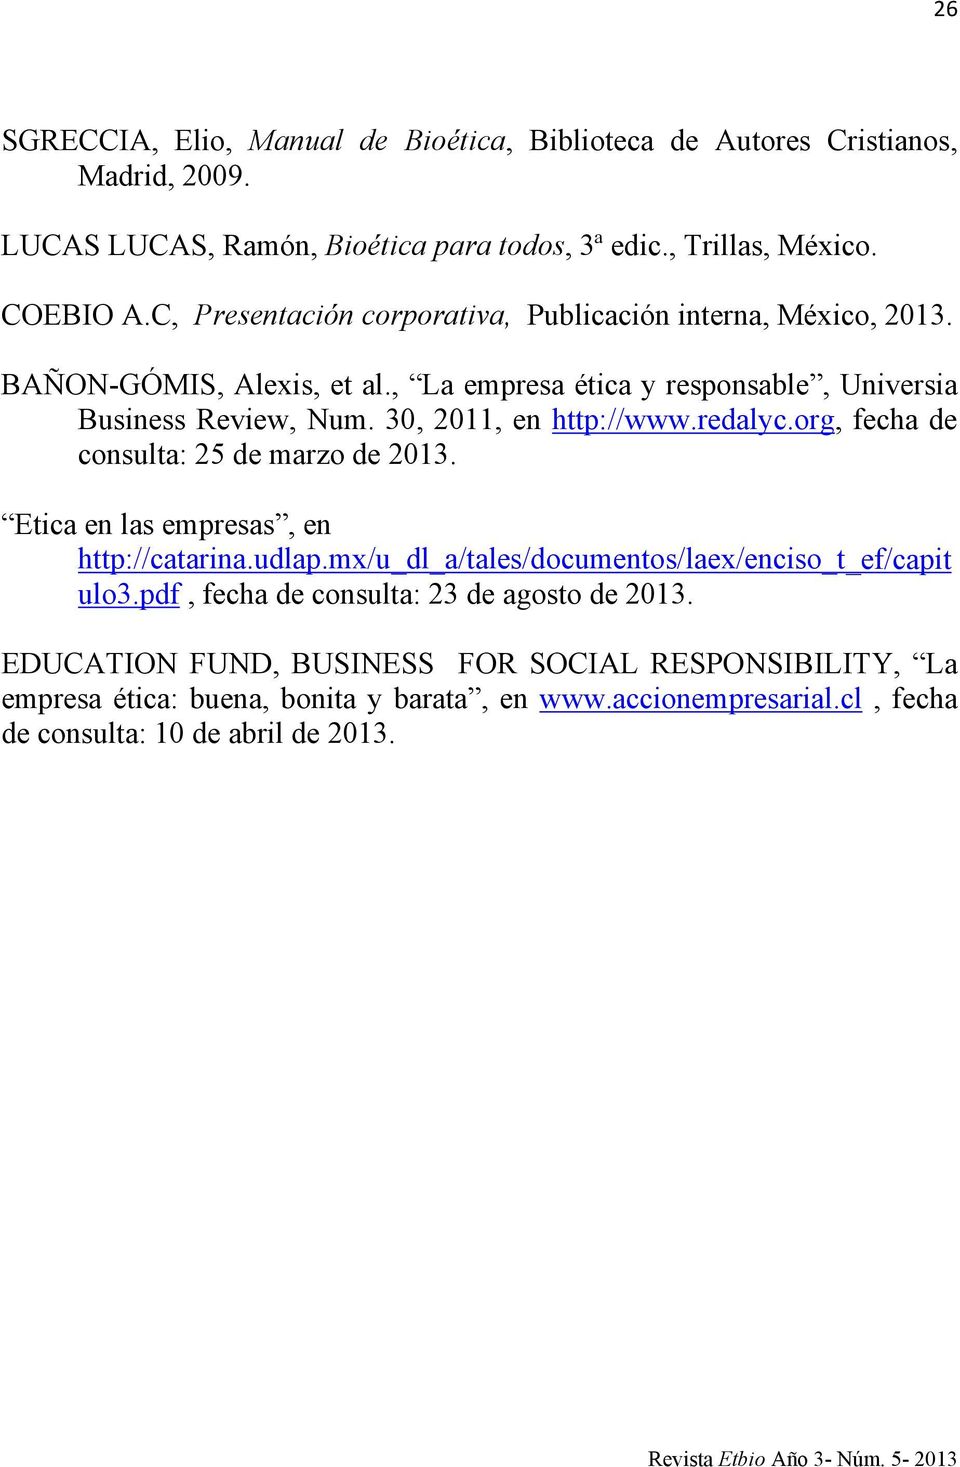 30, 2011, en http://www.redalyc.org, fecha de consulta: 25 de marzo de 2013. Etica en las empresas, en http://catarina.udlap.